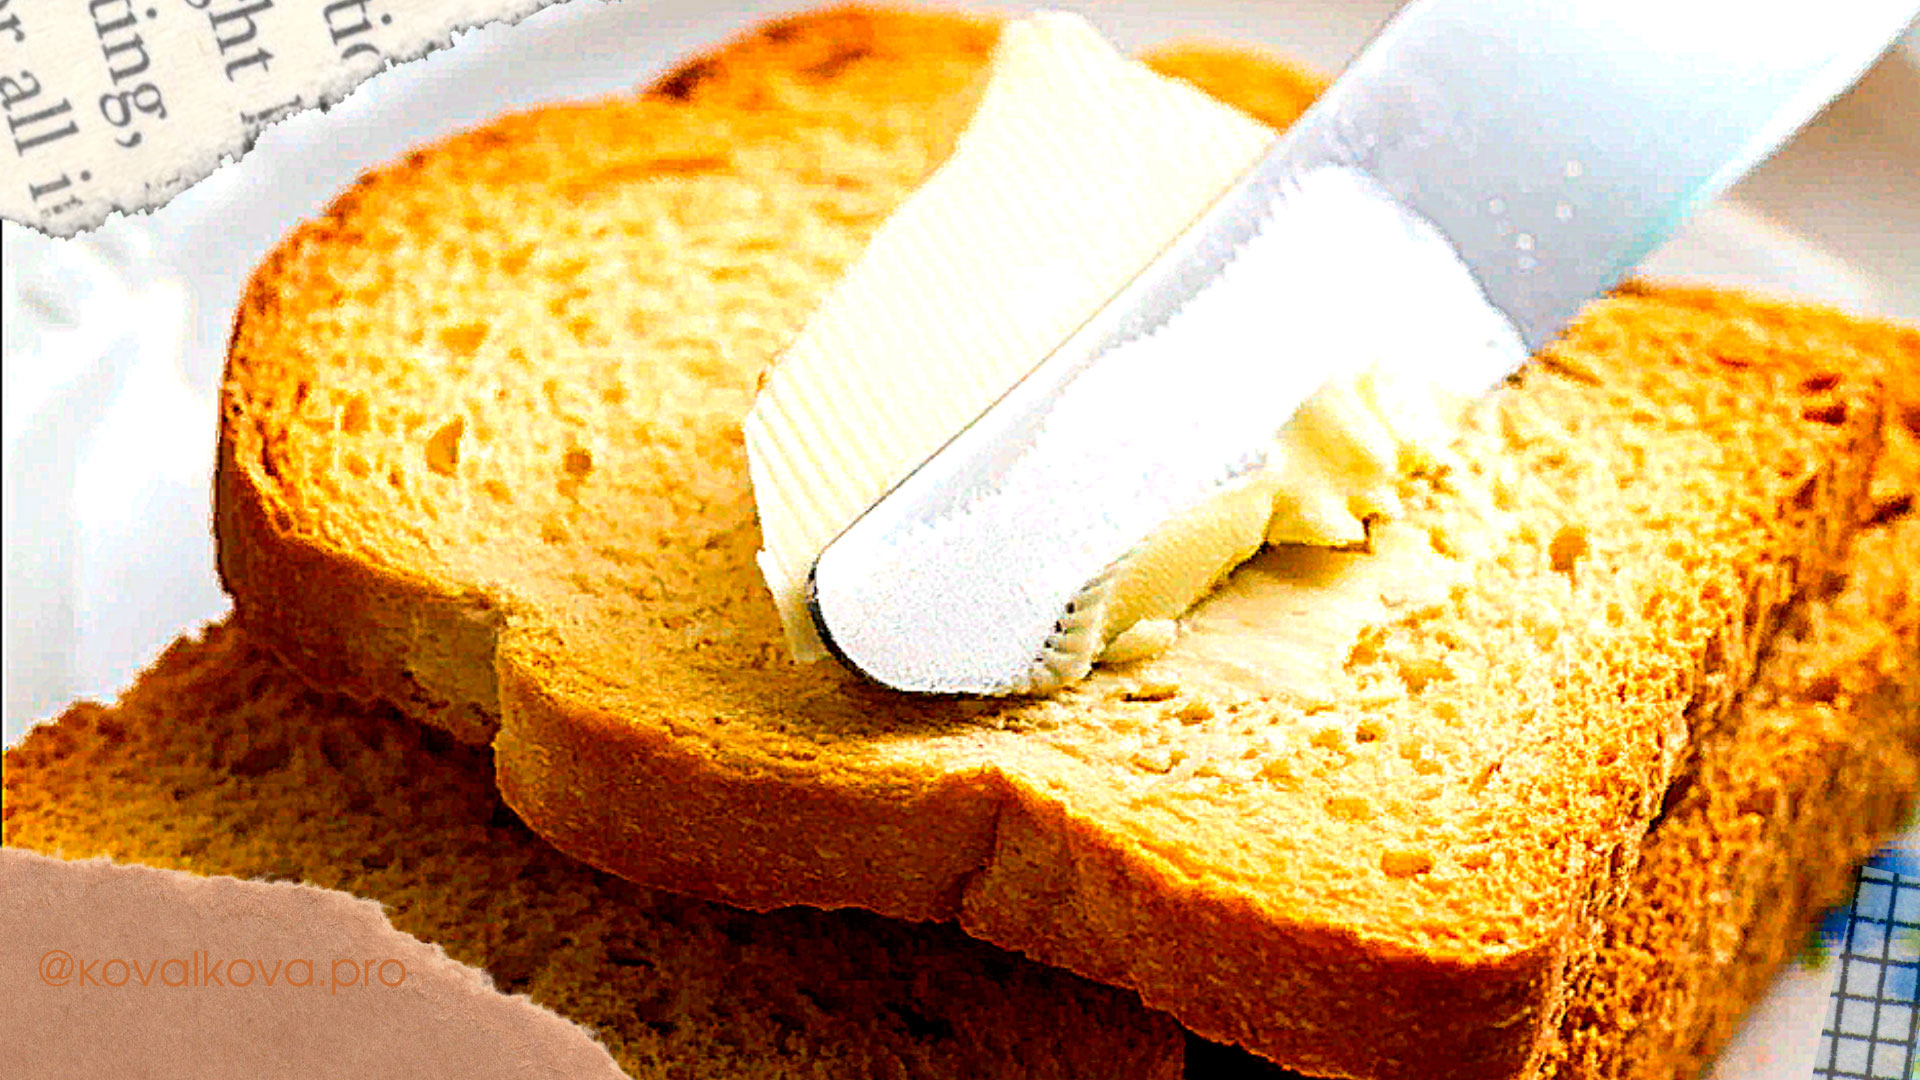 Самый большой бутерброд с маслом занесен в книгу рекордов